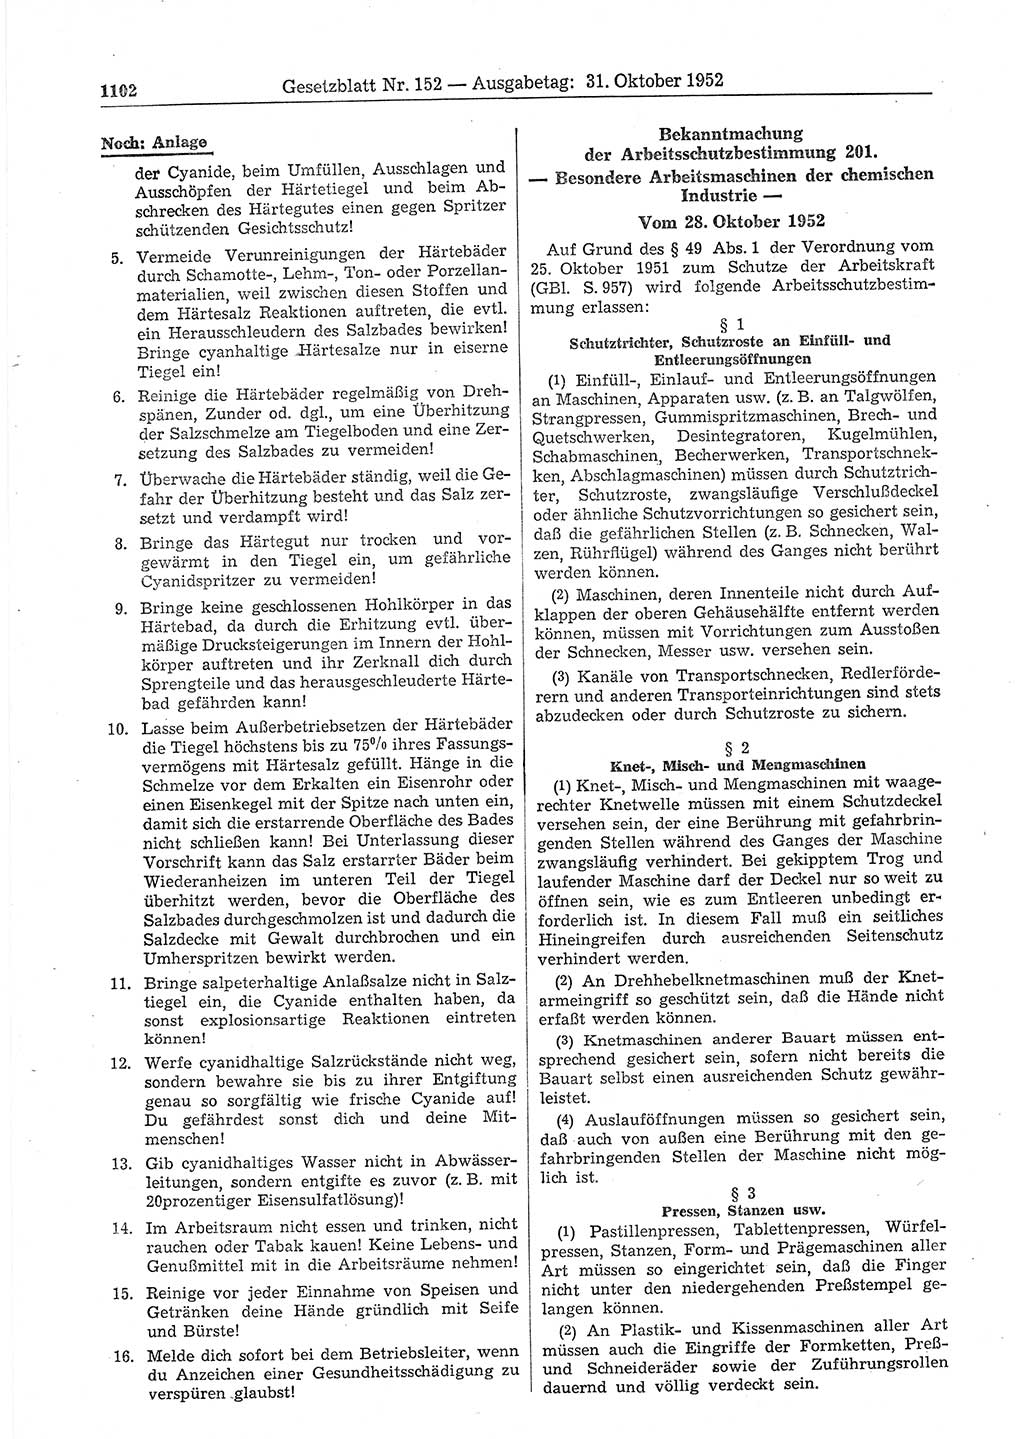 Gesetzblatt (GBl.) der Deutschen Demokratischen Republik (DDR) 1952, Seite 1102 (GBl. DDR 1952, S. 1102)